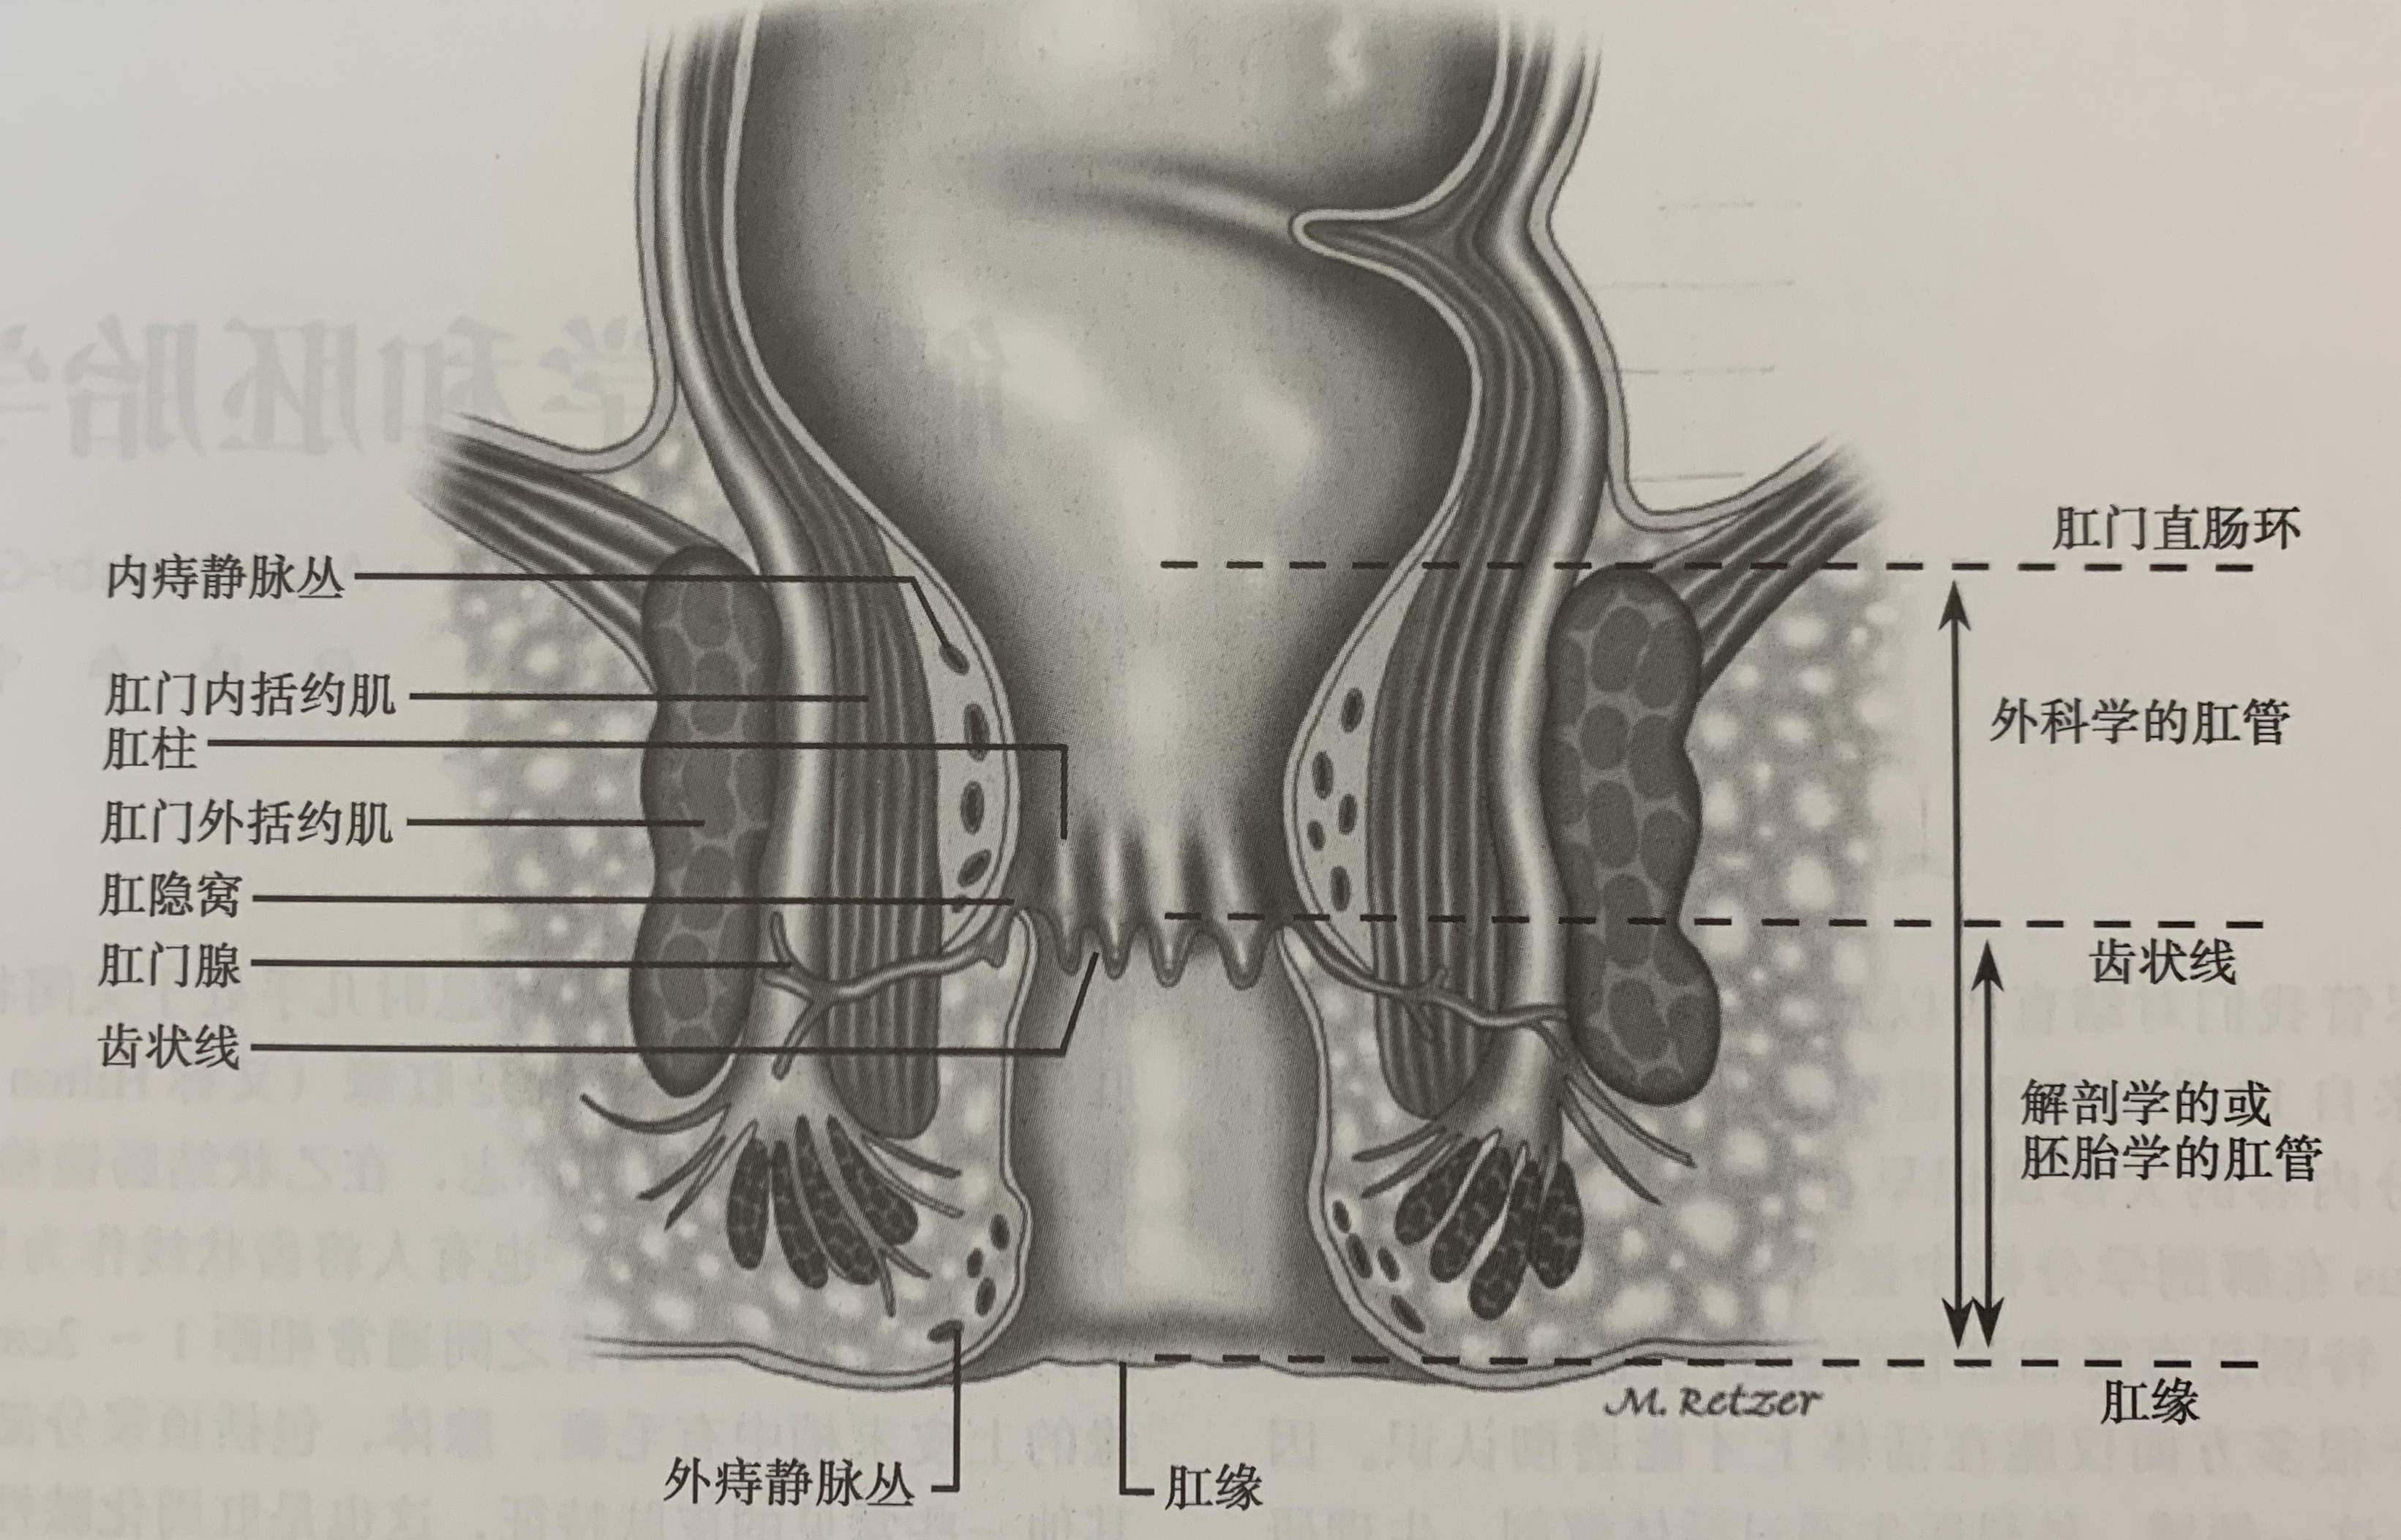 前者指齿线以下至肛缘的部分;后者指肛管直肠肌环上缘平面以下至肛缘